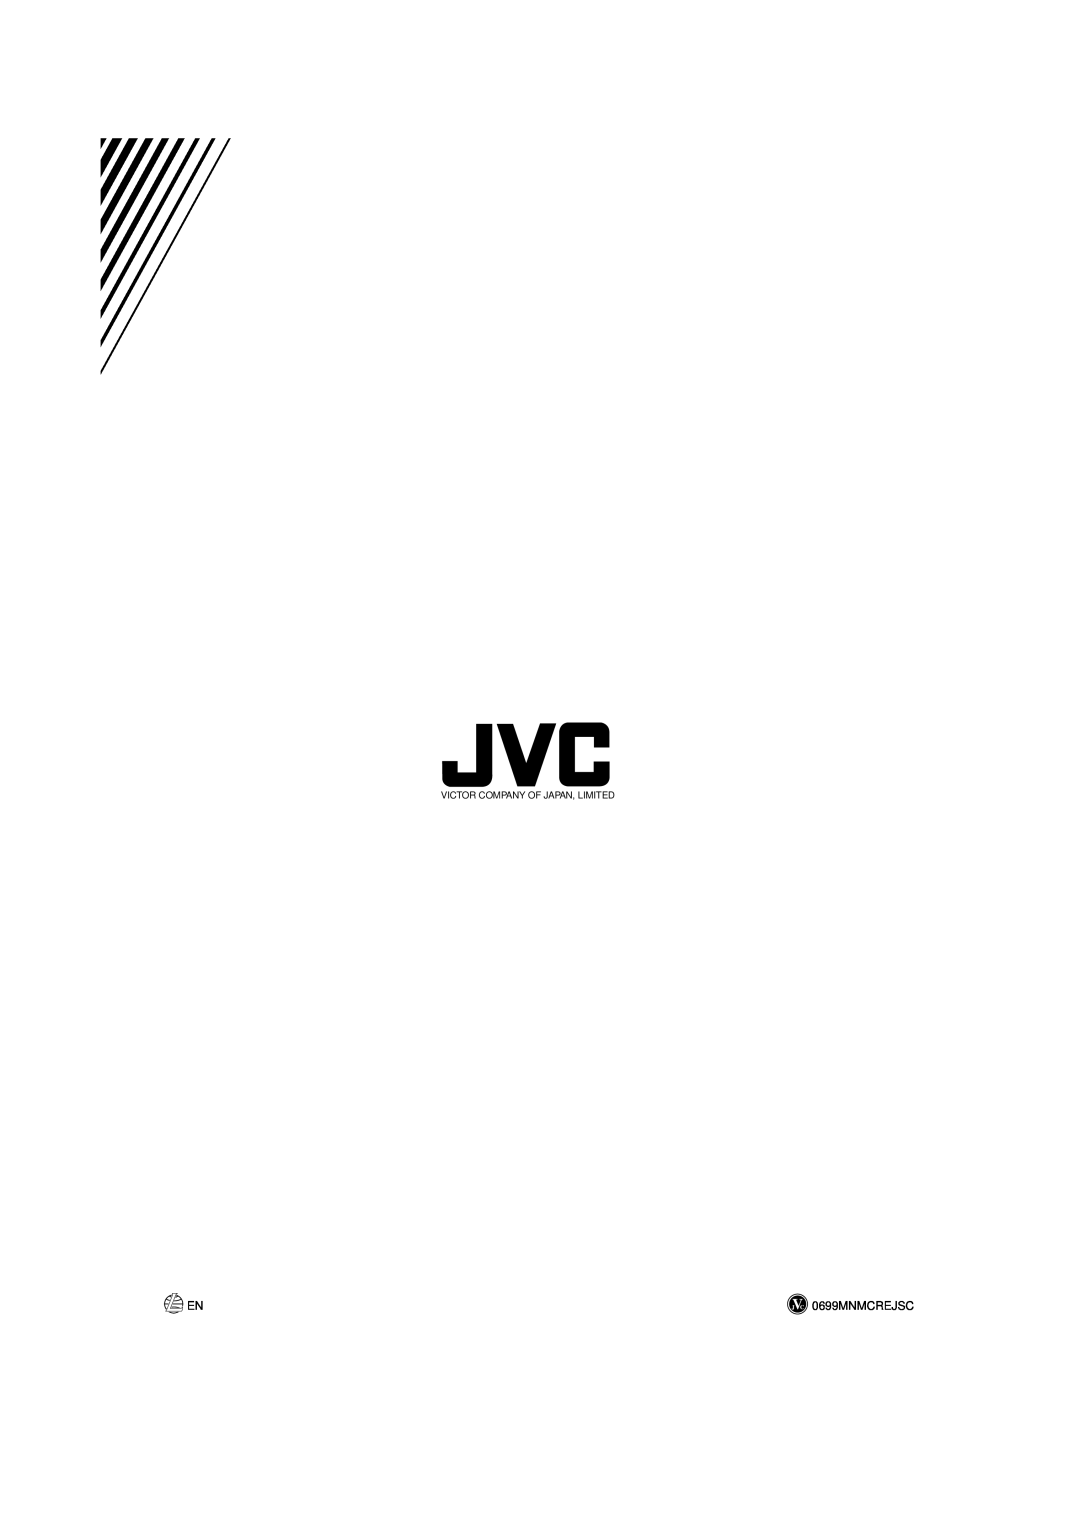 JVC UX-V9MD manual 0699MNMCREJSC, Victor Company Of Japan, Limited 